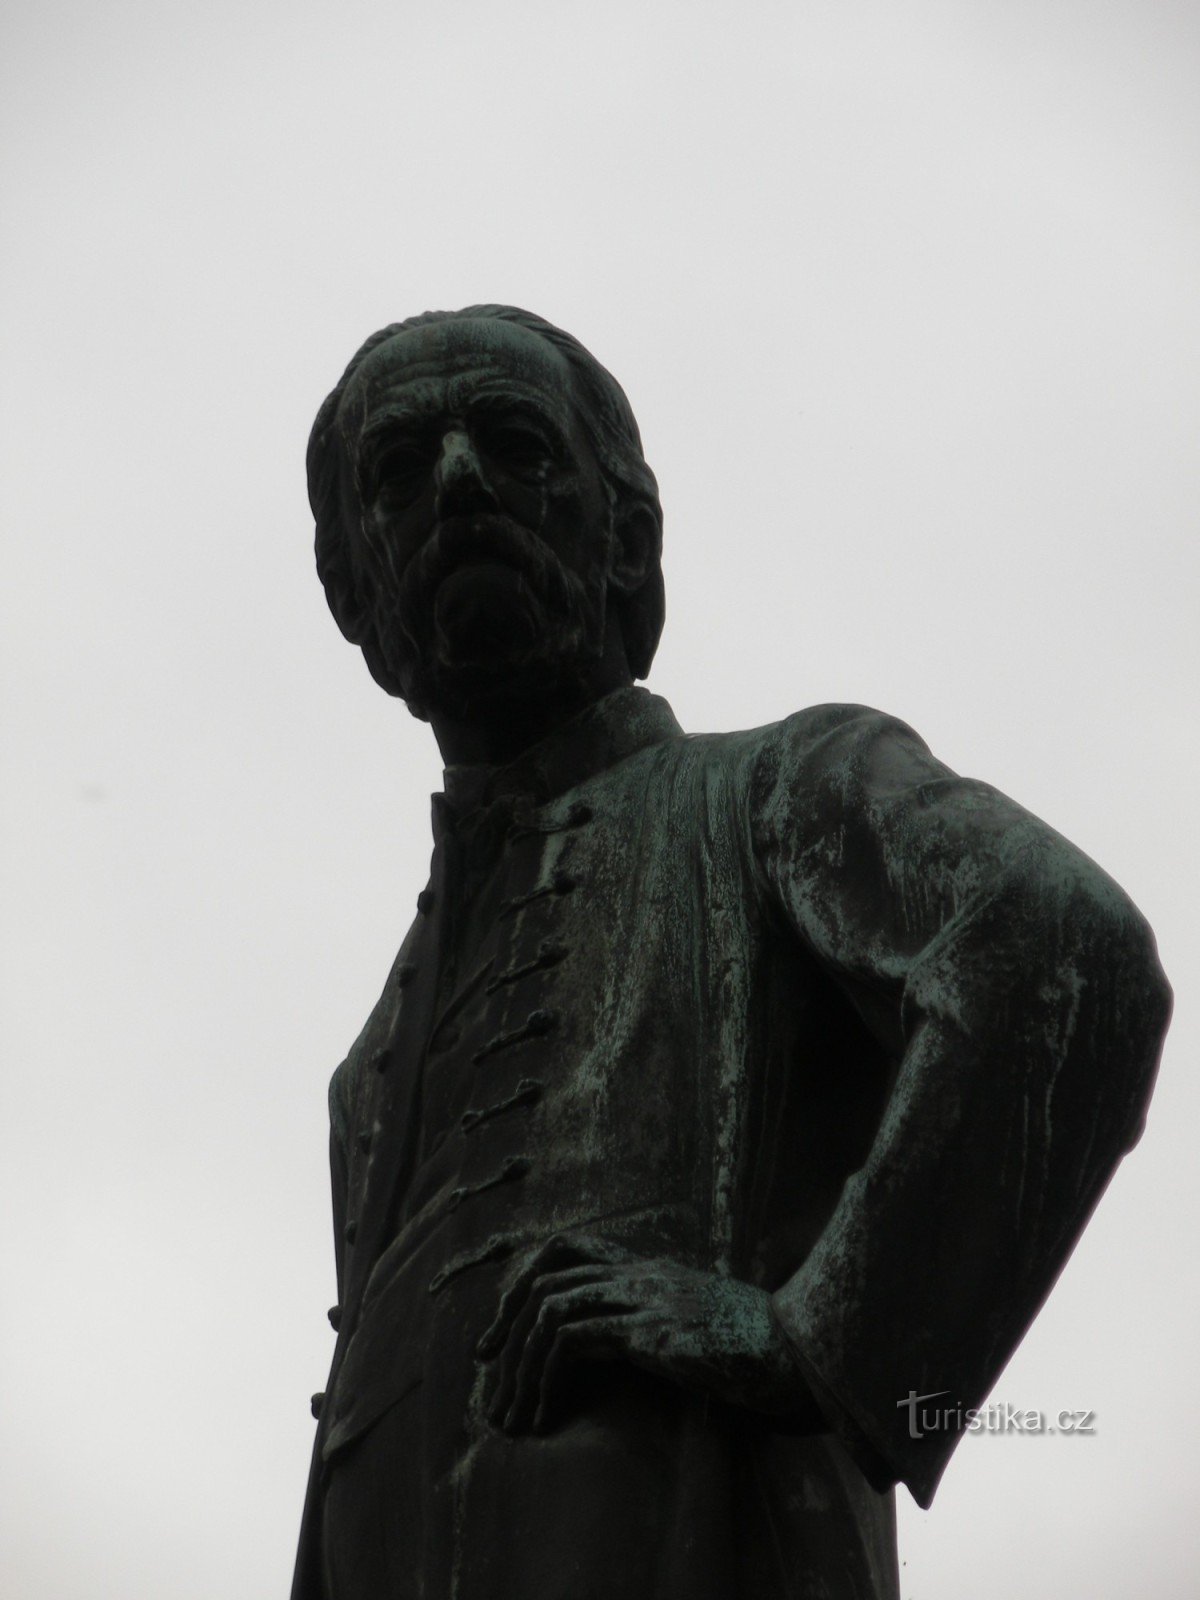 Statui și monumente în Litomyšl din secolul al XIX-lea până în prezent